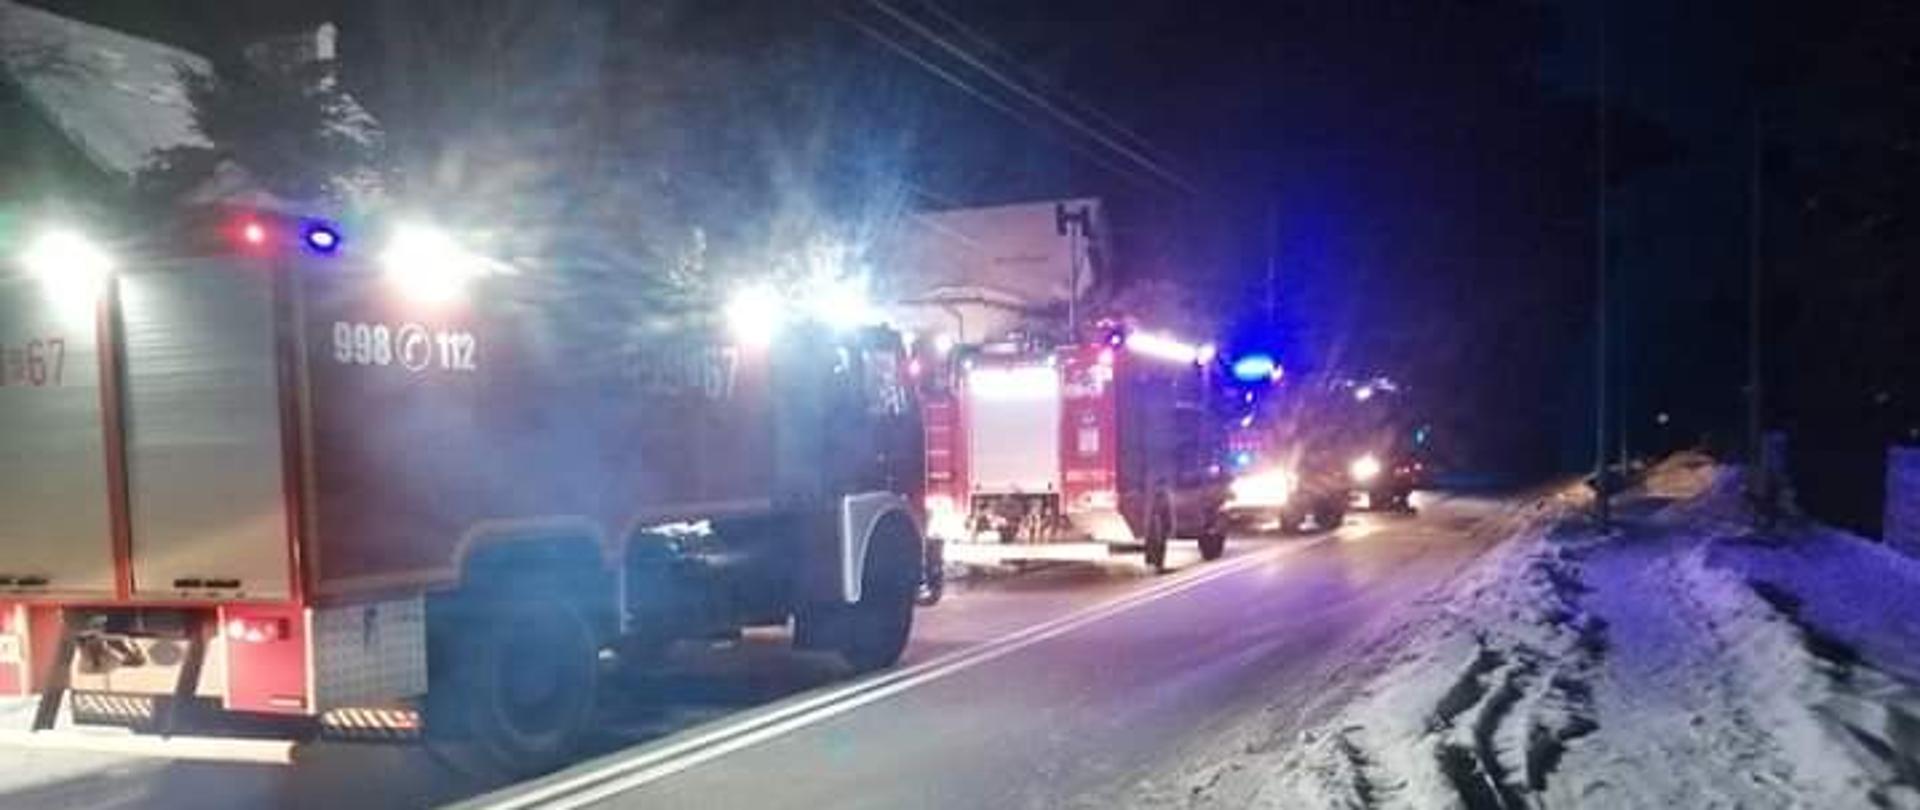 Zdjęcie przedstawia cztery zastępy jednostek ochrony przeciwpożarowej, ustawionej na drodze asfaltowej jeden za drugim w zimowej scenerii z włączoną sygnalizacją świetlną błyskową o barwie niebieskiej. 